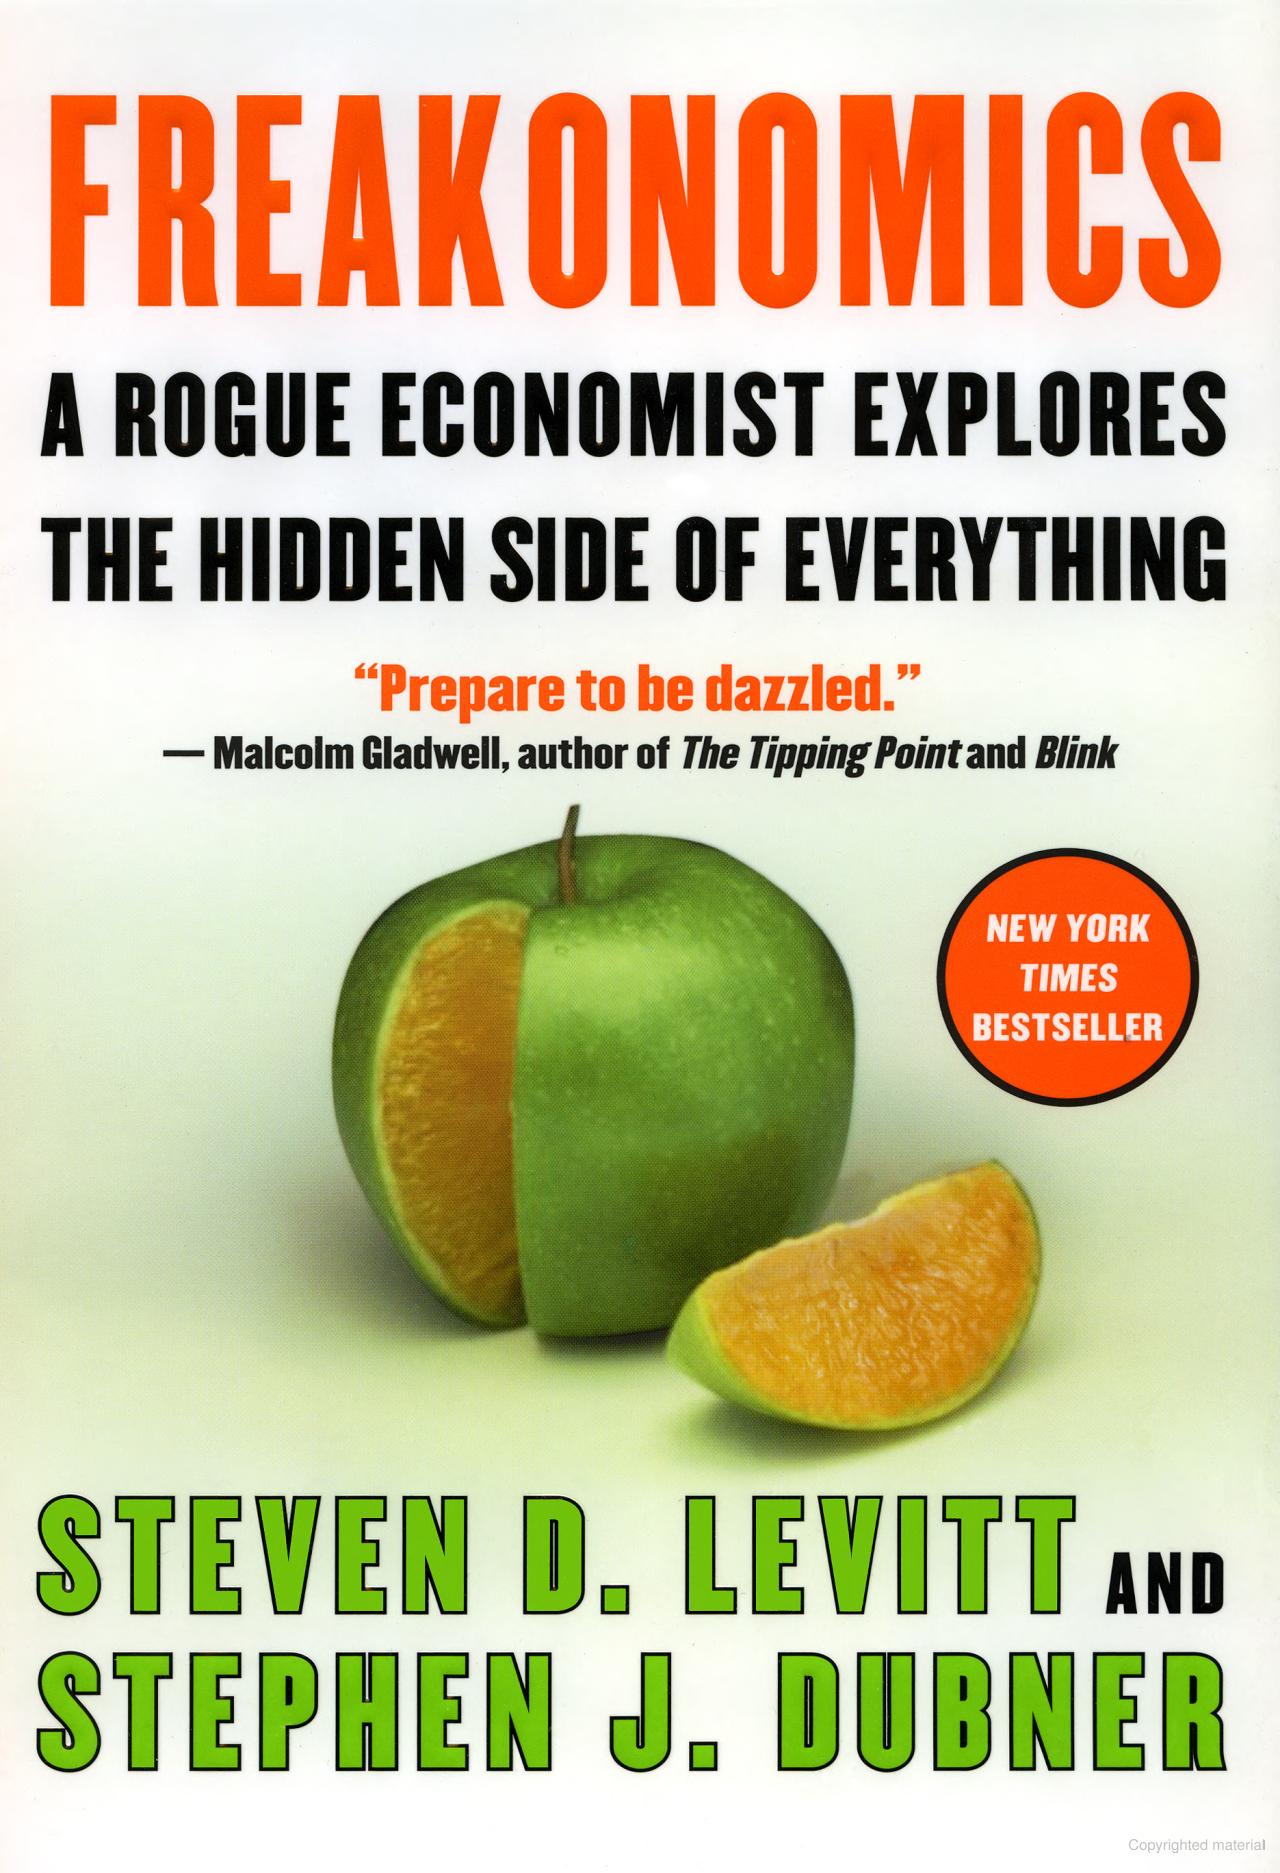 Stephen J. Dubner, Steven D. Levitt: Freakonomics (Hardcover, 2005, William Morrow)